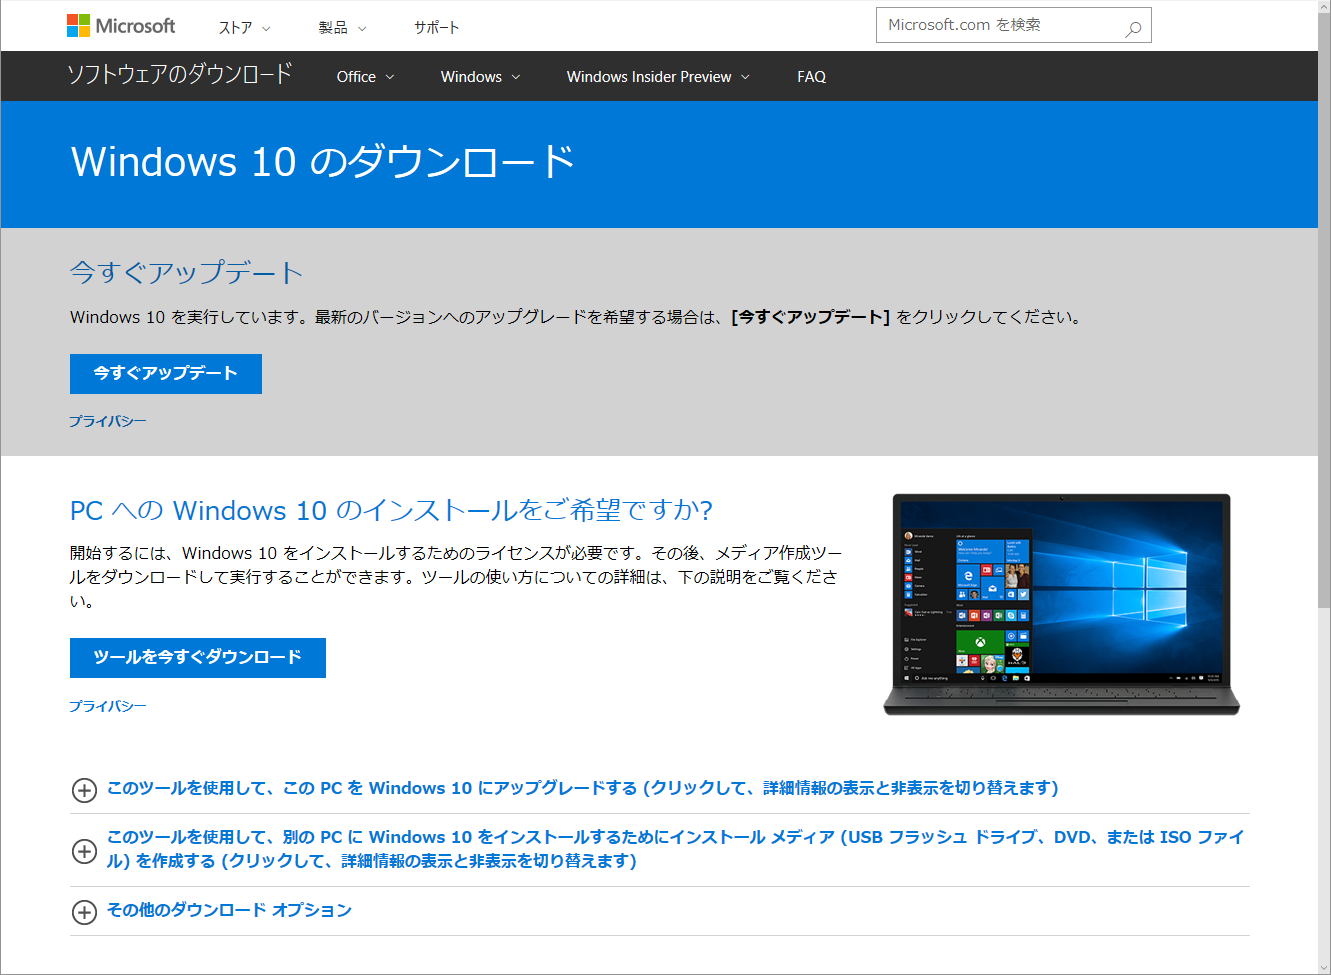 Windows 10ダウンロードページ画面のキャプチャ